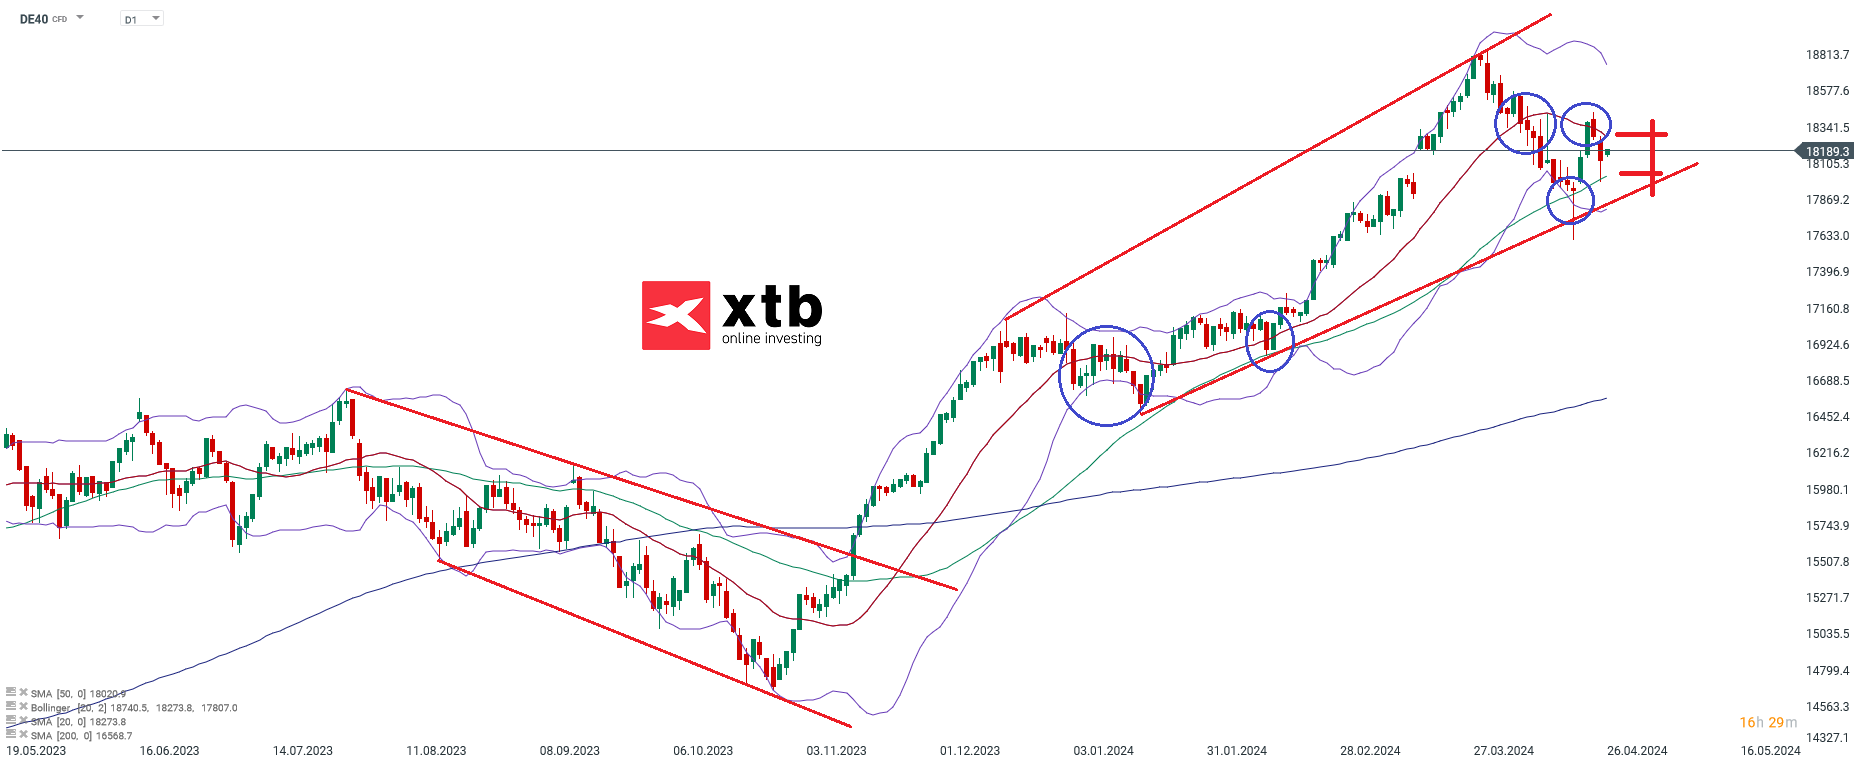 DAX-Tägliche-Prognose-vom-26-04-2024-Chartanalyse-Daytrading-Setups-und-Marktausblick-für-aktive-Trader-Kommentar-Jens-Chrzanowski-stock3.com-1